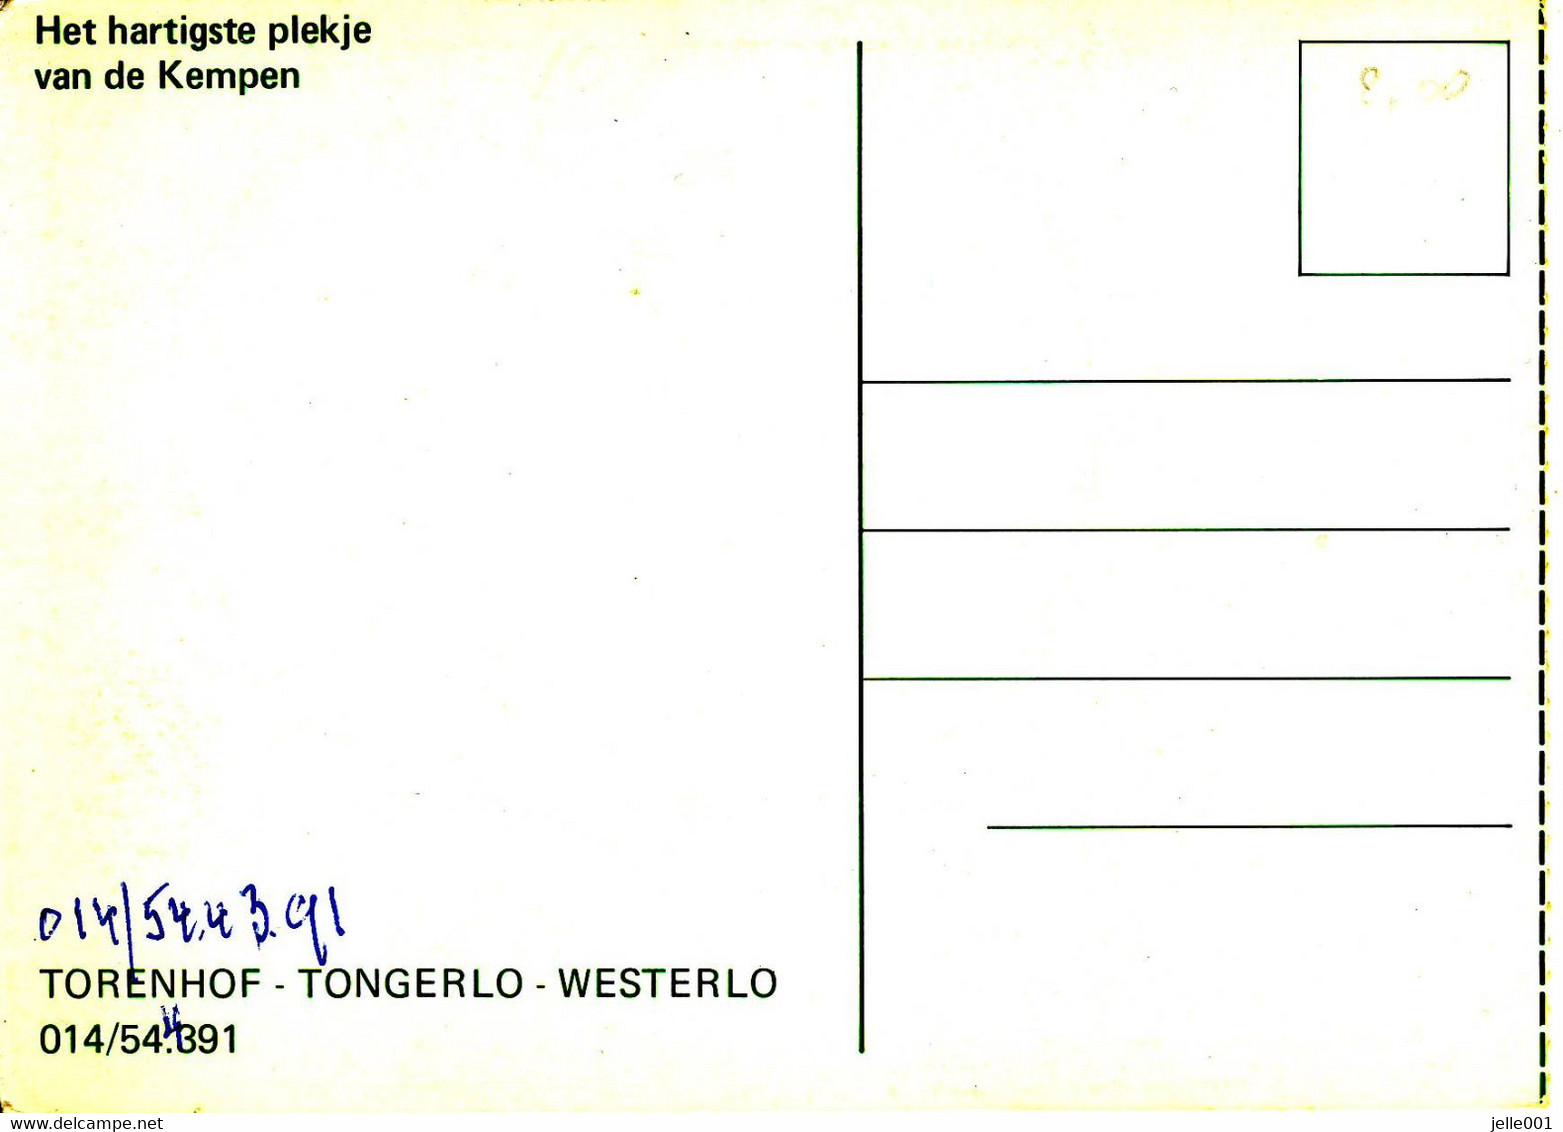 Tongerlo Westerlo Torenhof - Westerlo